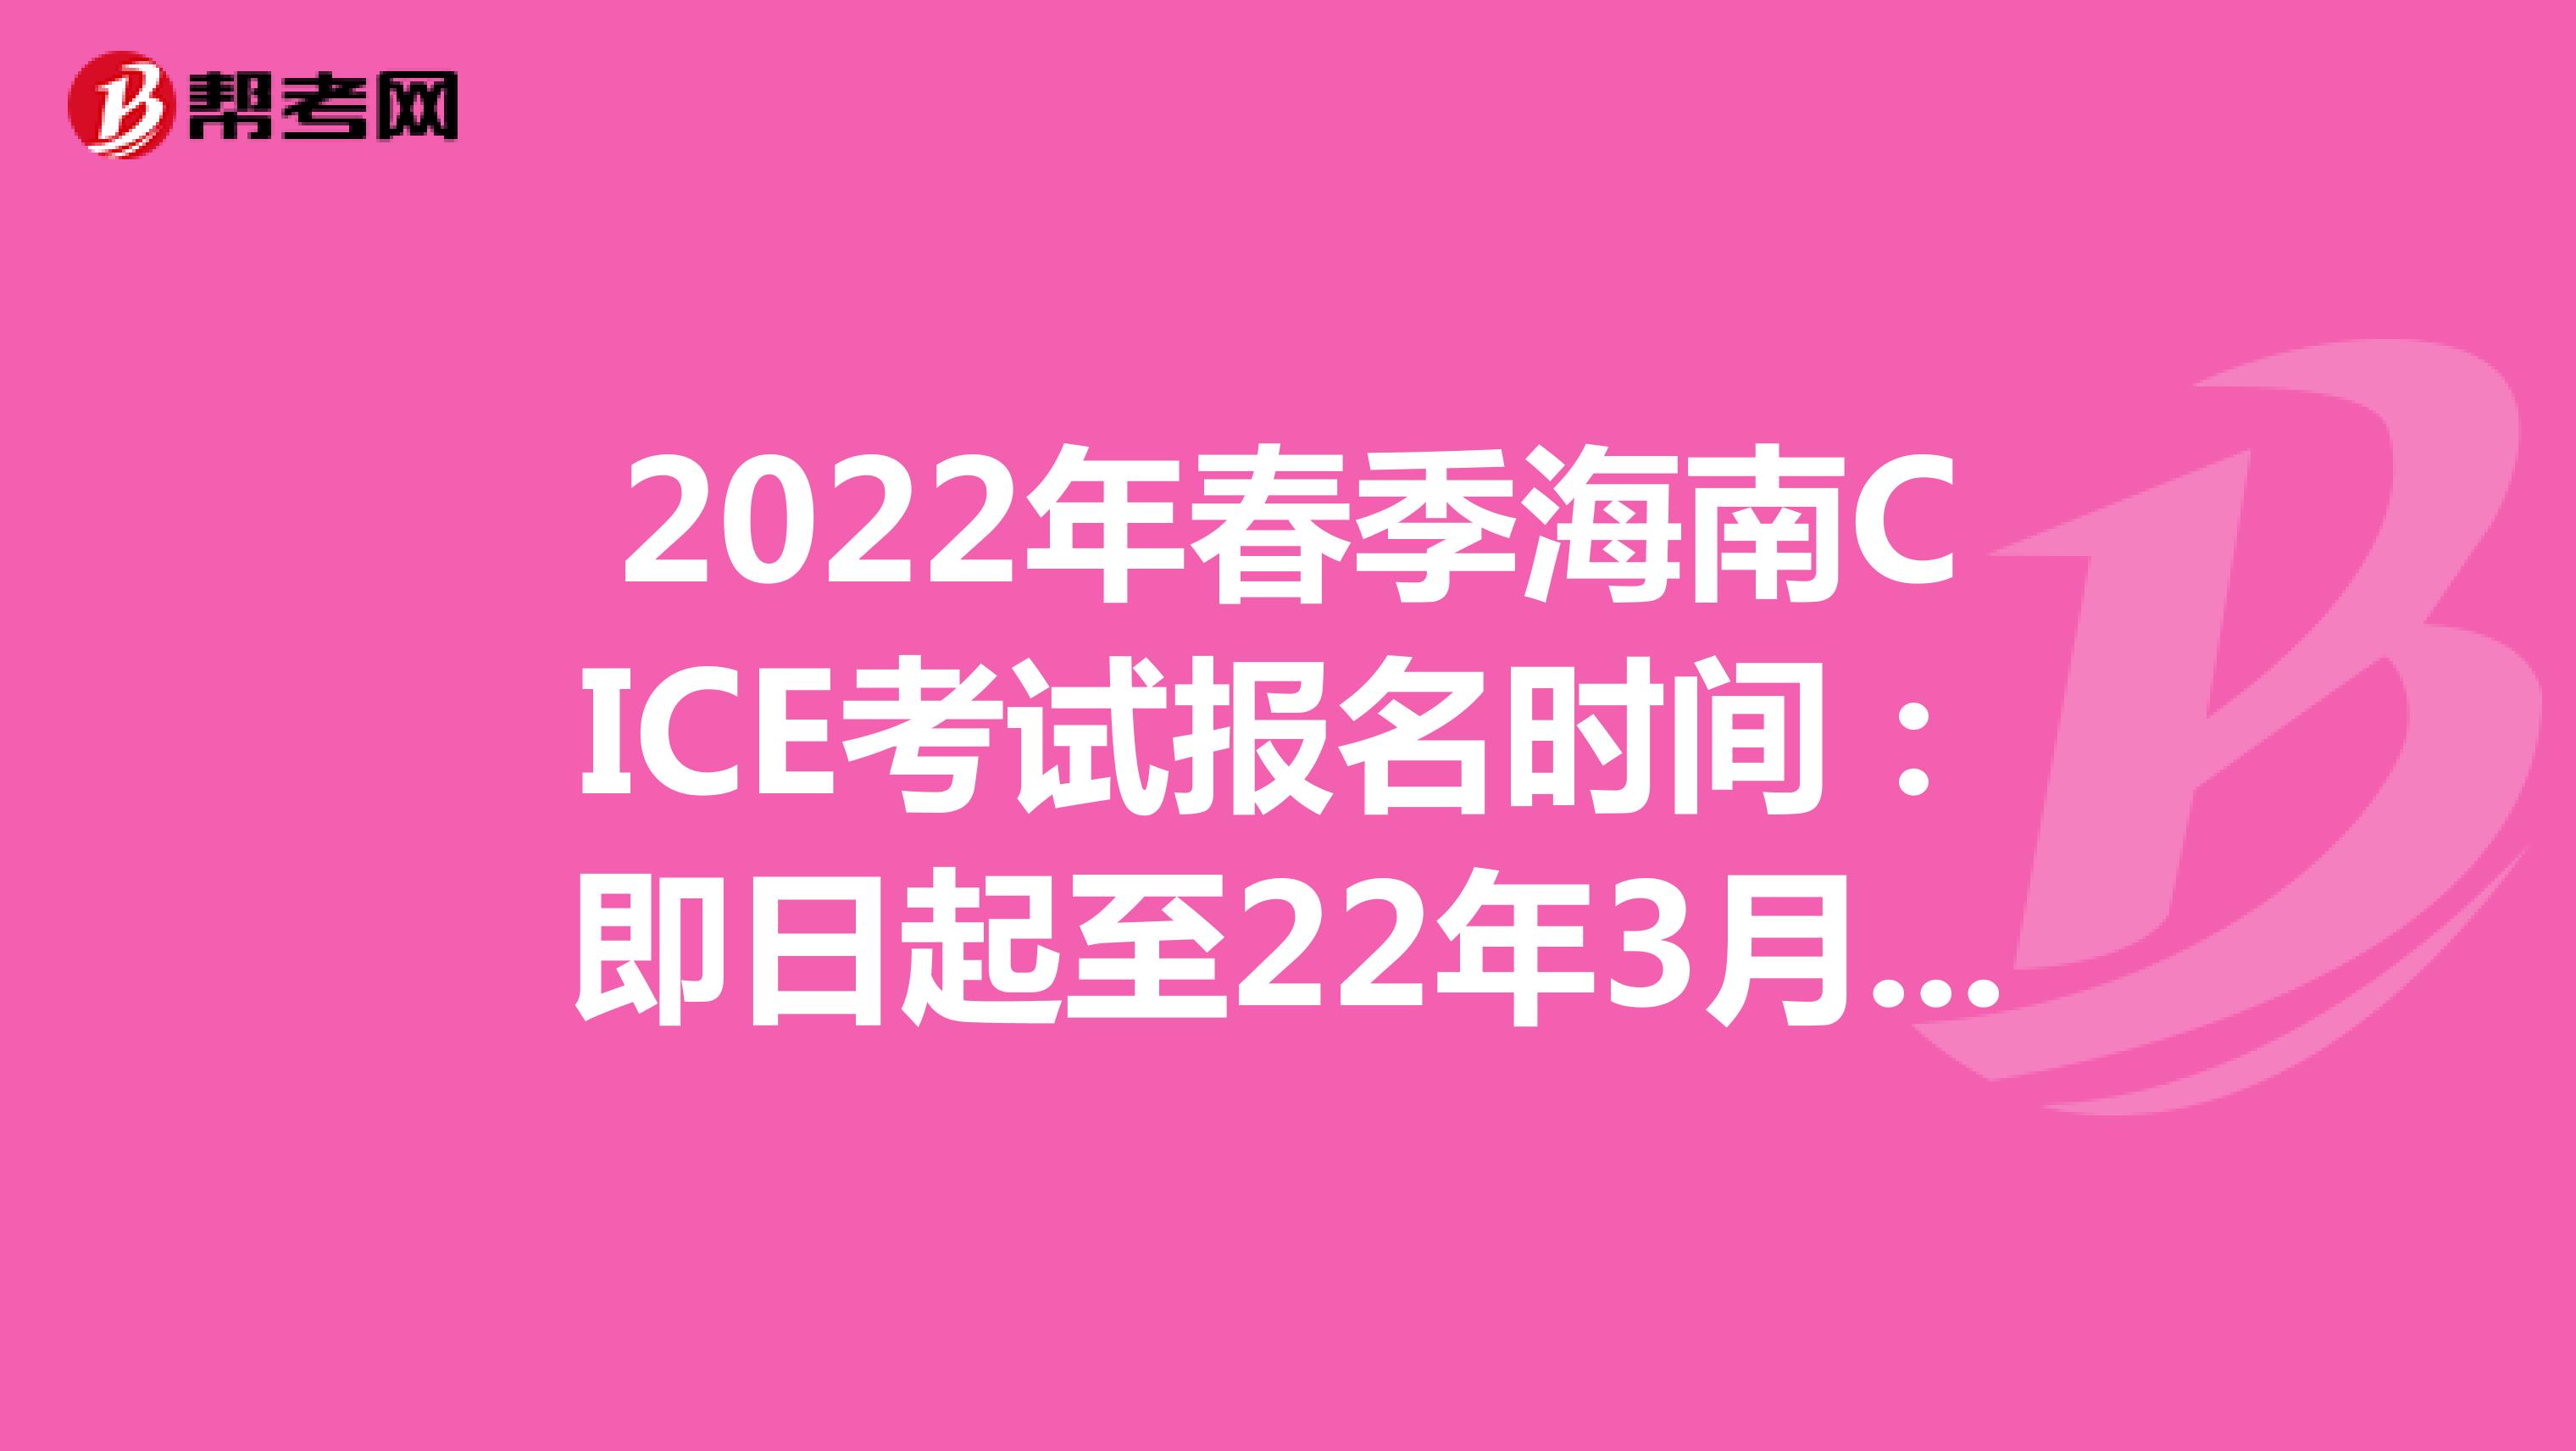 2022年春季海南CICE考试报名时间：即日起至22年3月31日